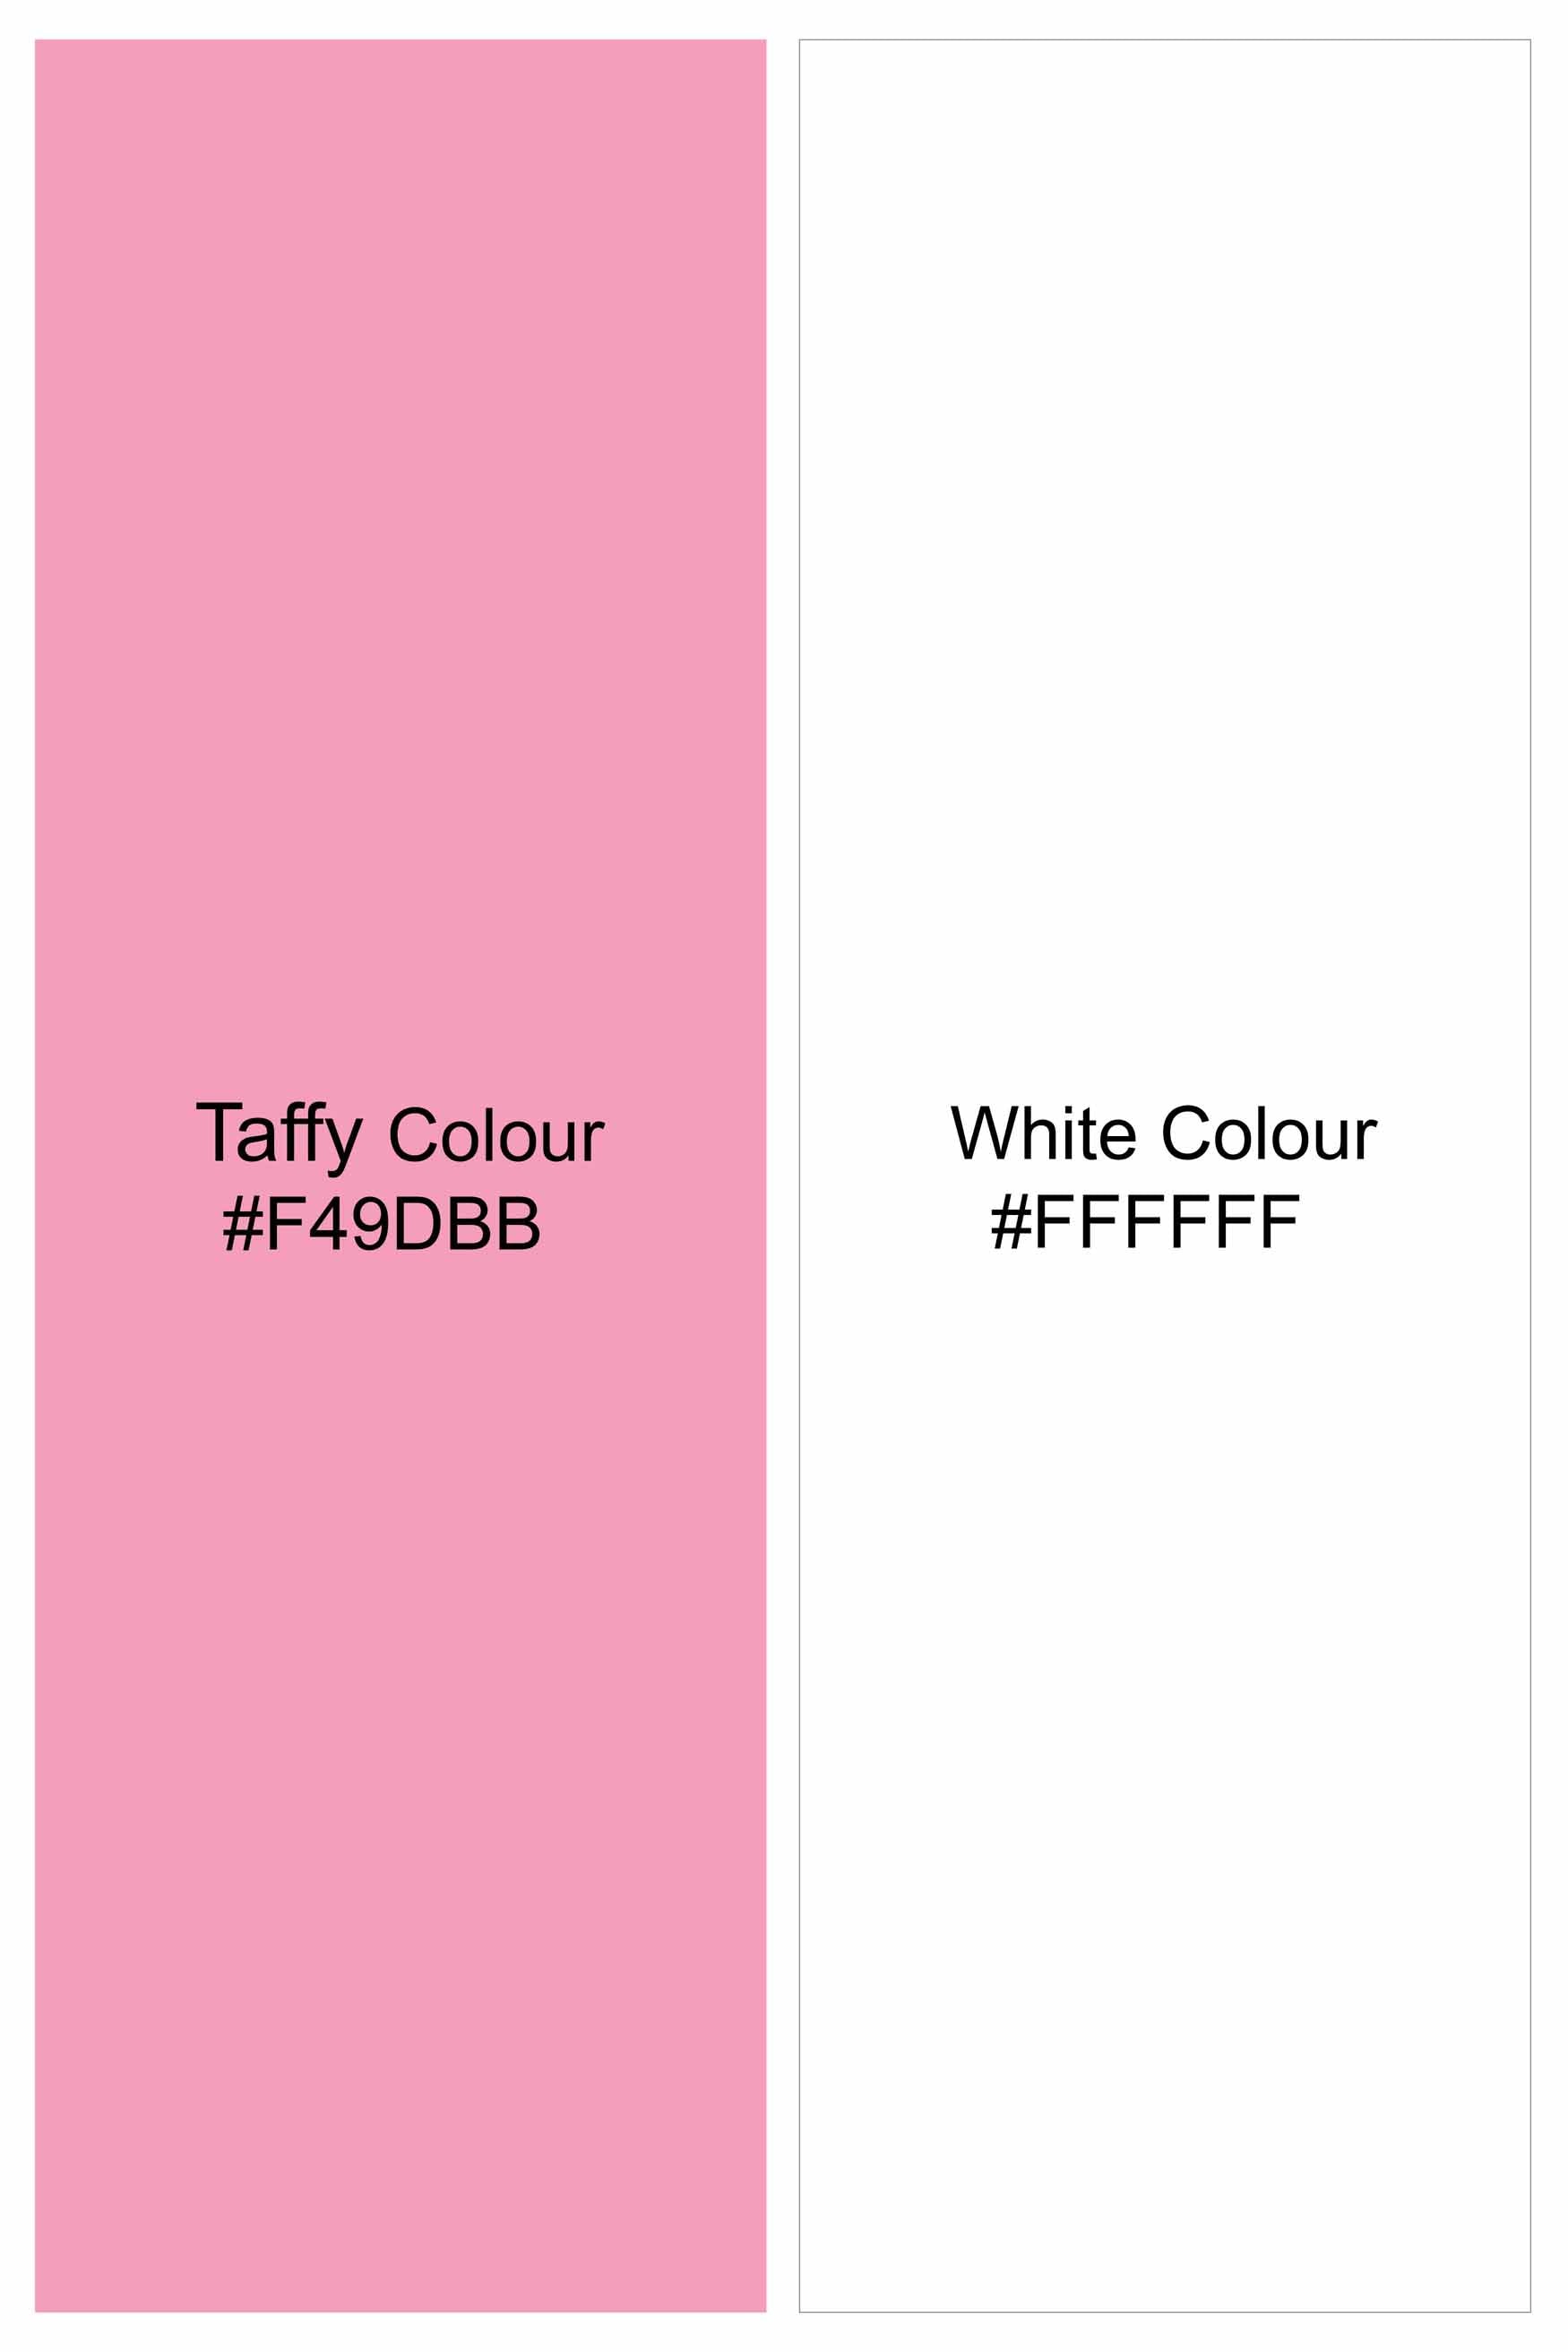 Taffy Pink and White Dobby Textured Premium Giza Cotton Shirt 11616-M-MN-38, 11616-M-MN-H-38, 11616-M-MN-39, 11616-M-MN-H-39, 11616-M-MN-40, 11616-M-MN-H-40, 11616-M-MN-42, 11616-M-MN-H-42, 11616-M-MN-44, 11616-M-MN-H-44, 11616-M-MN-46, 11616-M-MN-H-46, 11616-M-MN-48, 11616-M-MN-H-48, 11616-M-MN-50, 11616-M-MN-H-50, 11616-M-MN-52, 11616-M-MN-H-52